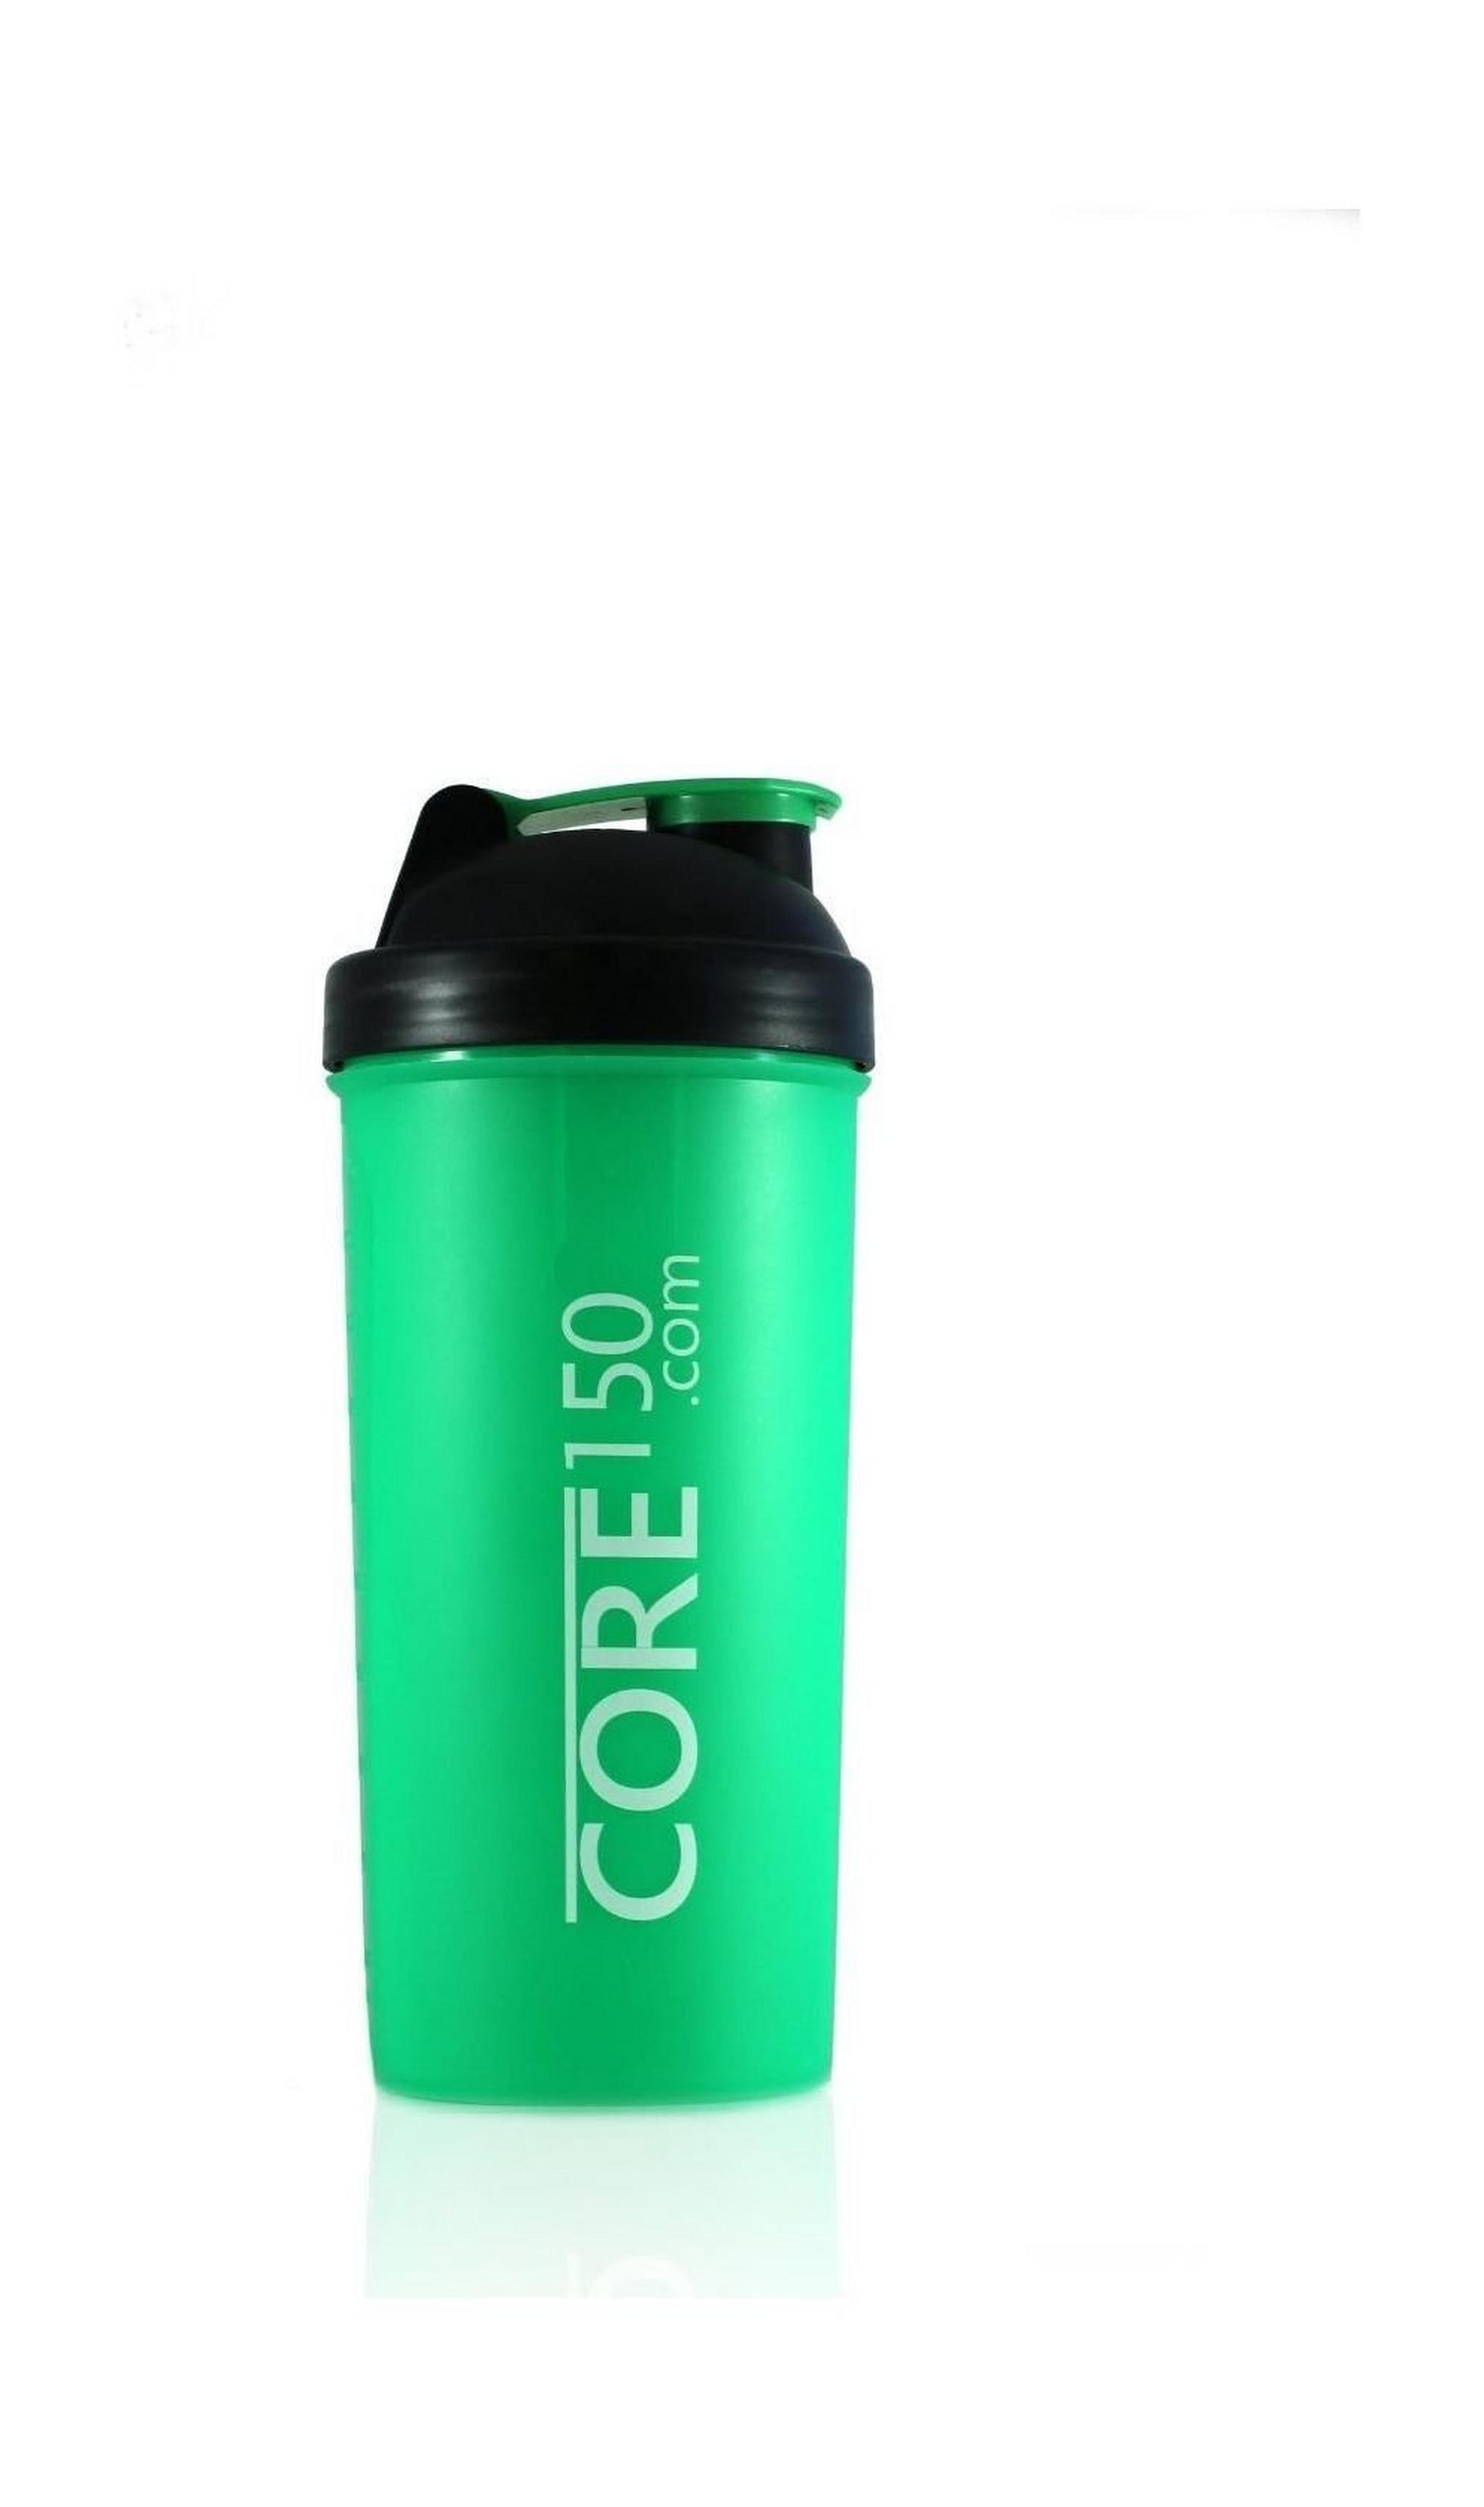 زجاجة الشرب للرياضة من كور١٥٠ – أخضر / غطاء أسود